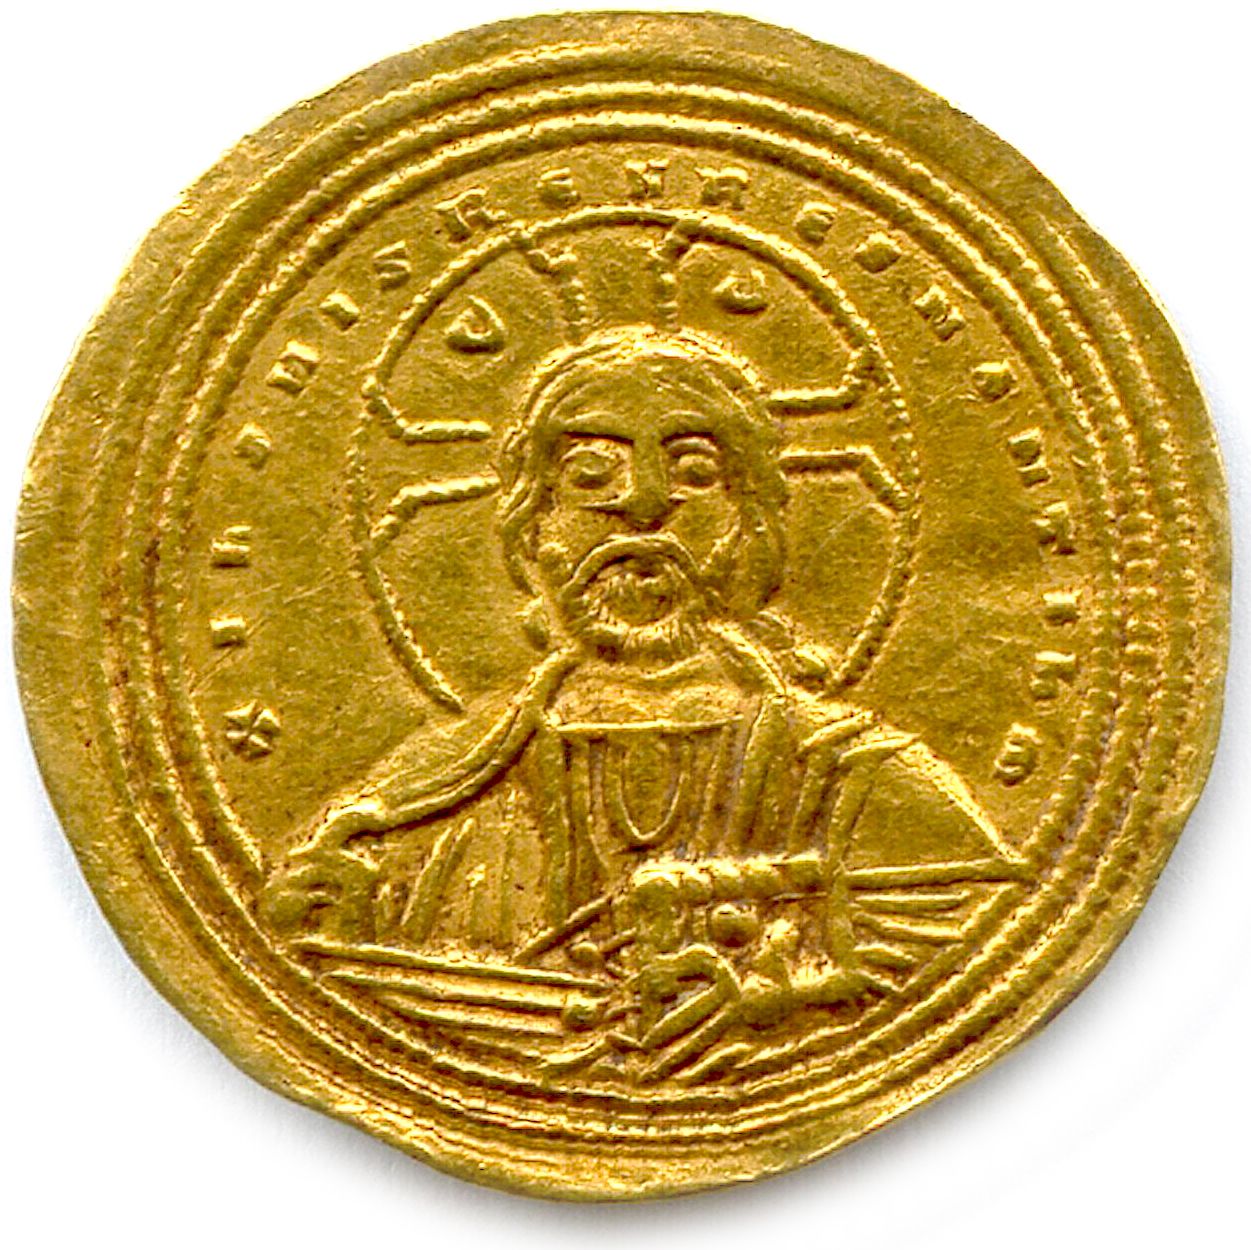 Null BASILO II y CONSTANTIN VIII 10 de enero de 976 - 15 de diciembre de 1025

I&hellip;